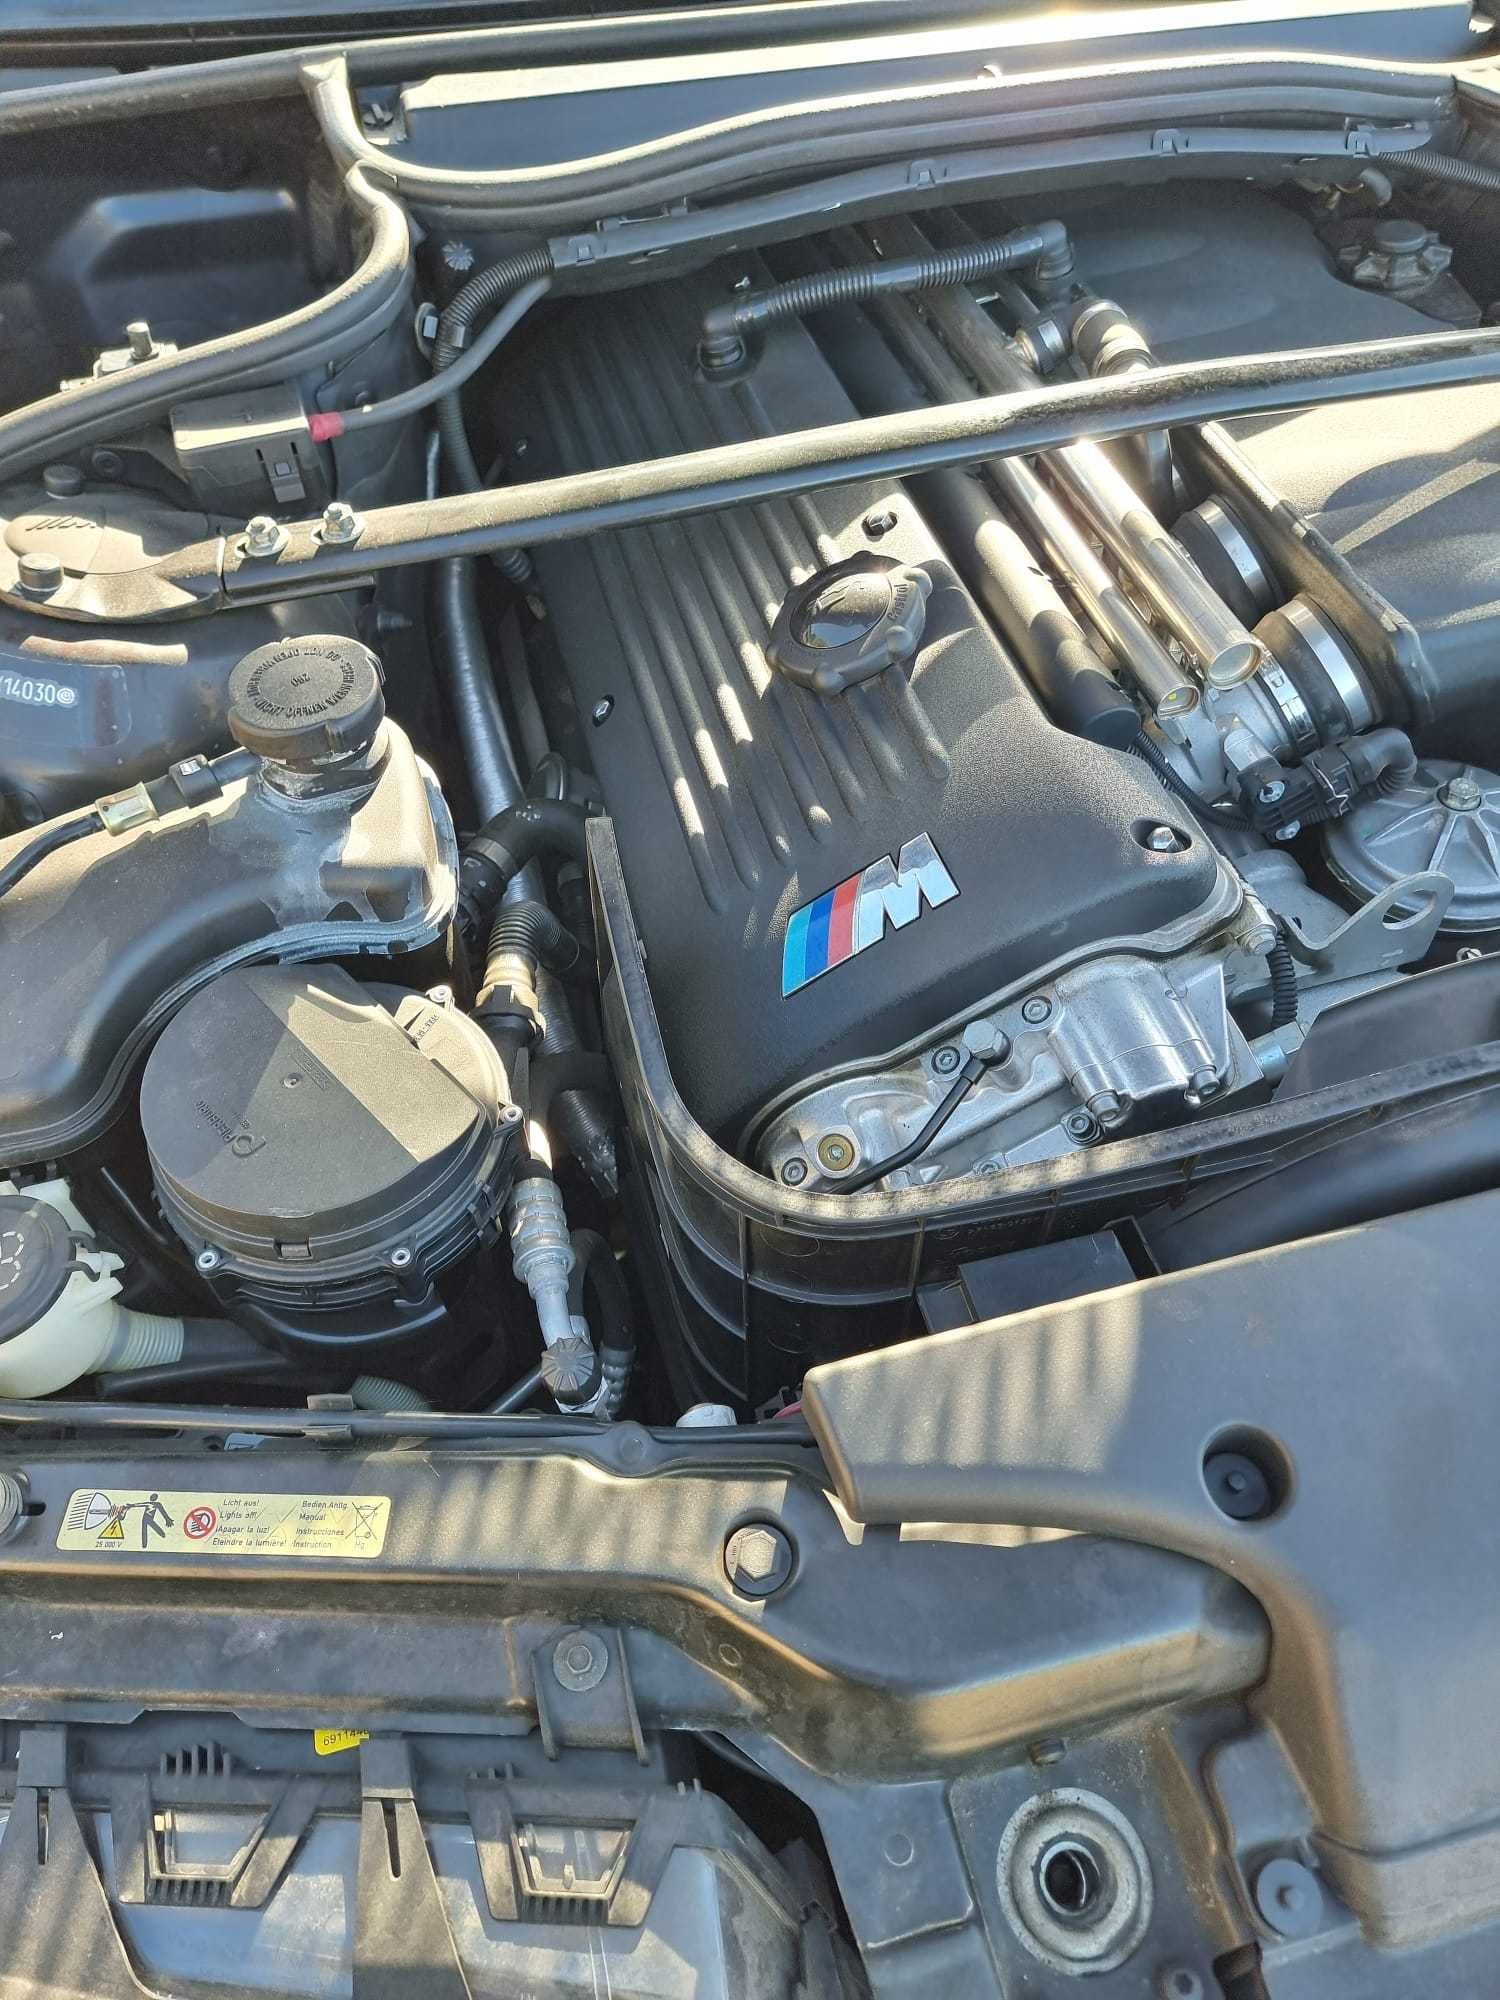 Desencadeie a Emoção: 2004 BMW M3 Cabrio SMGII